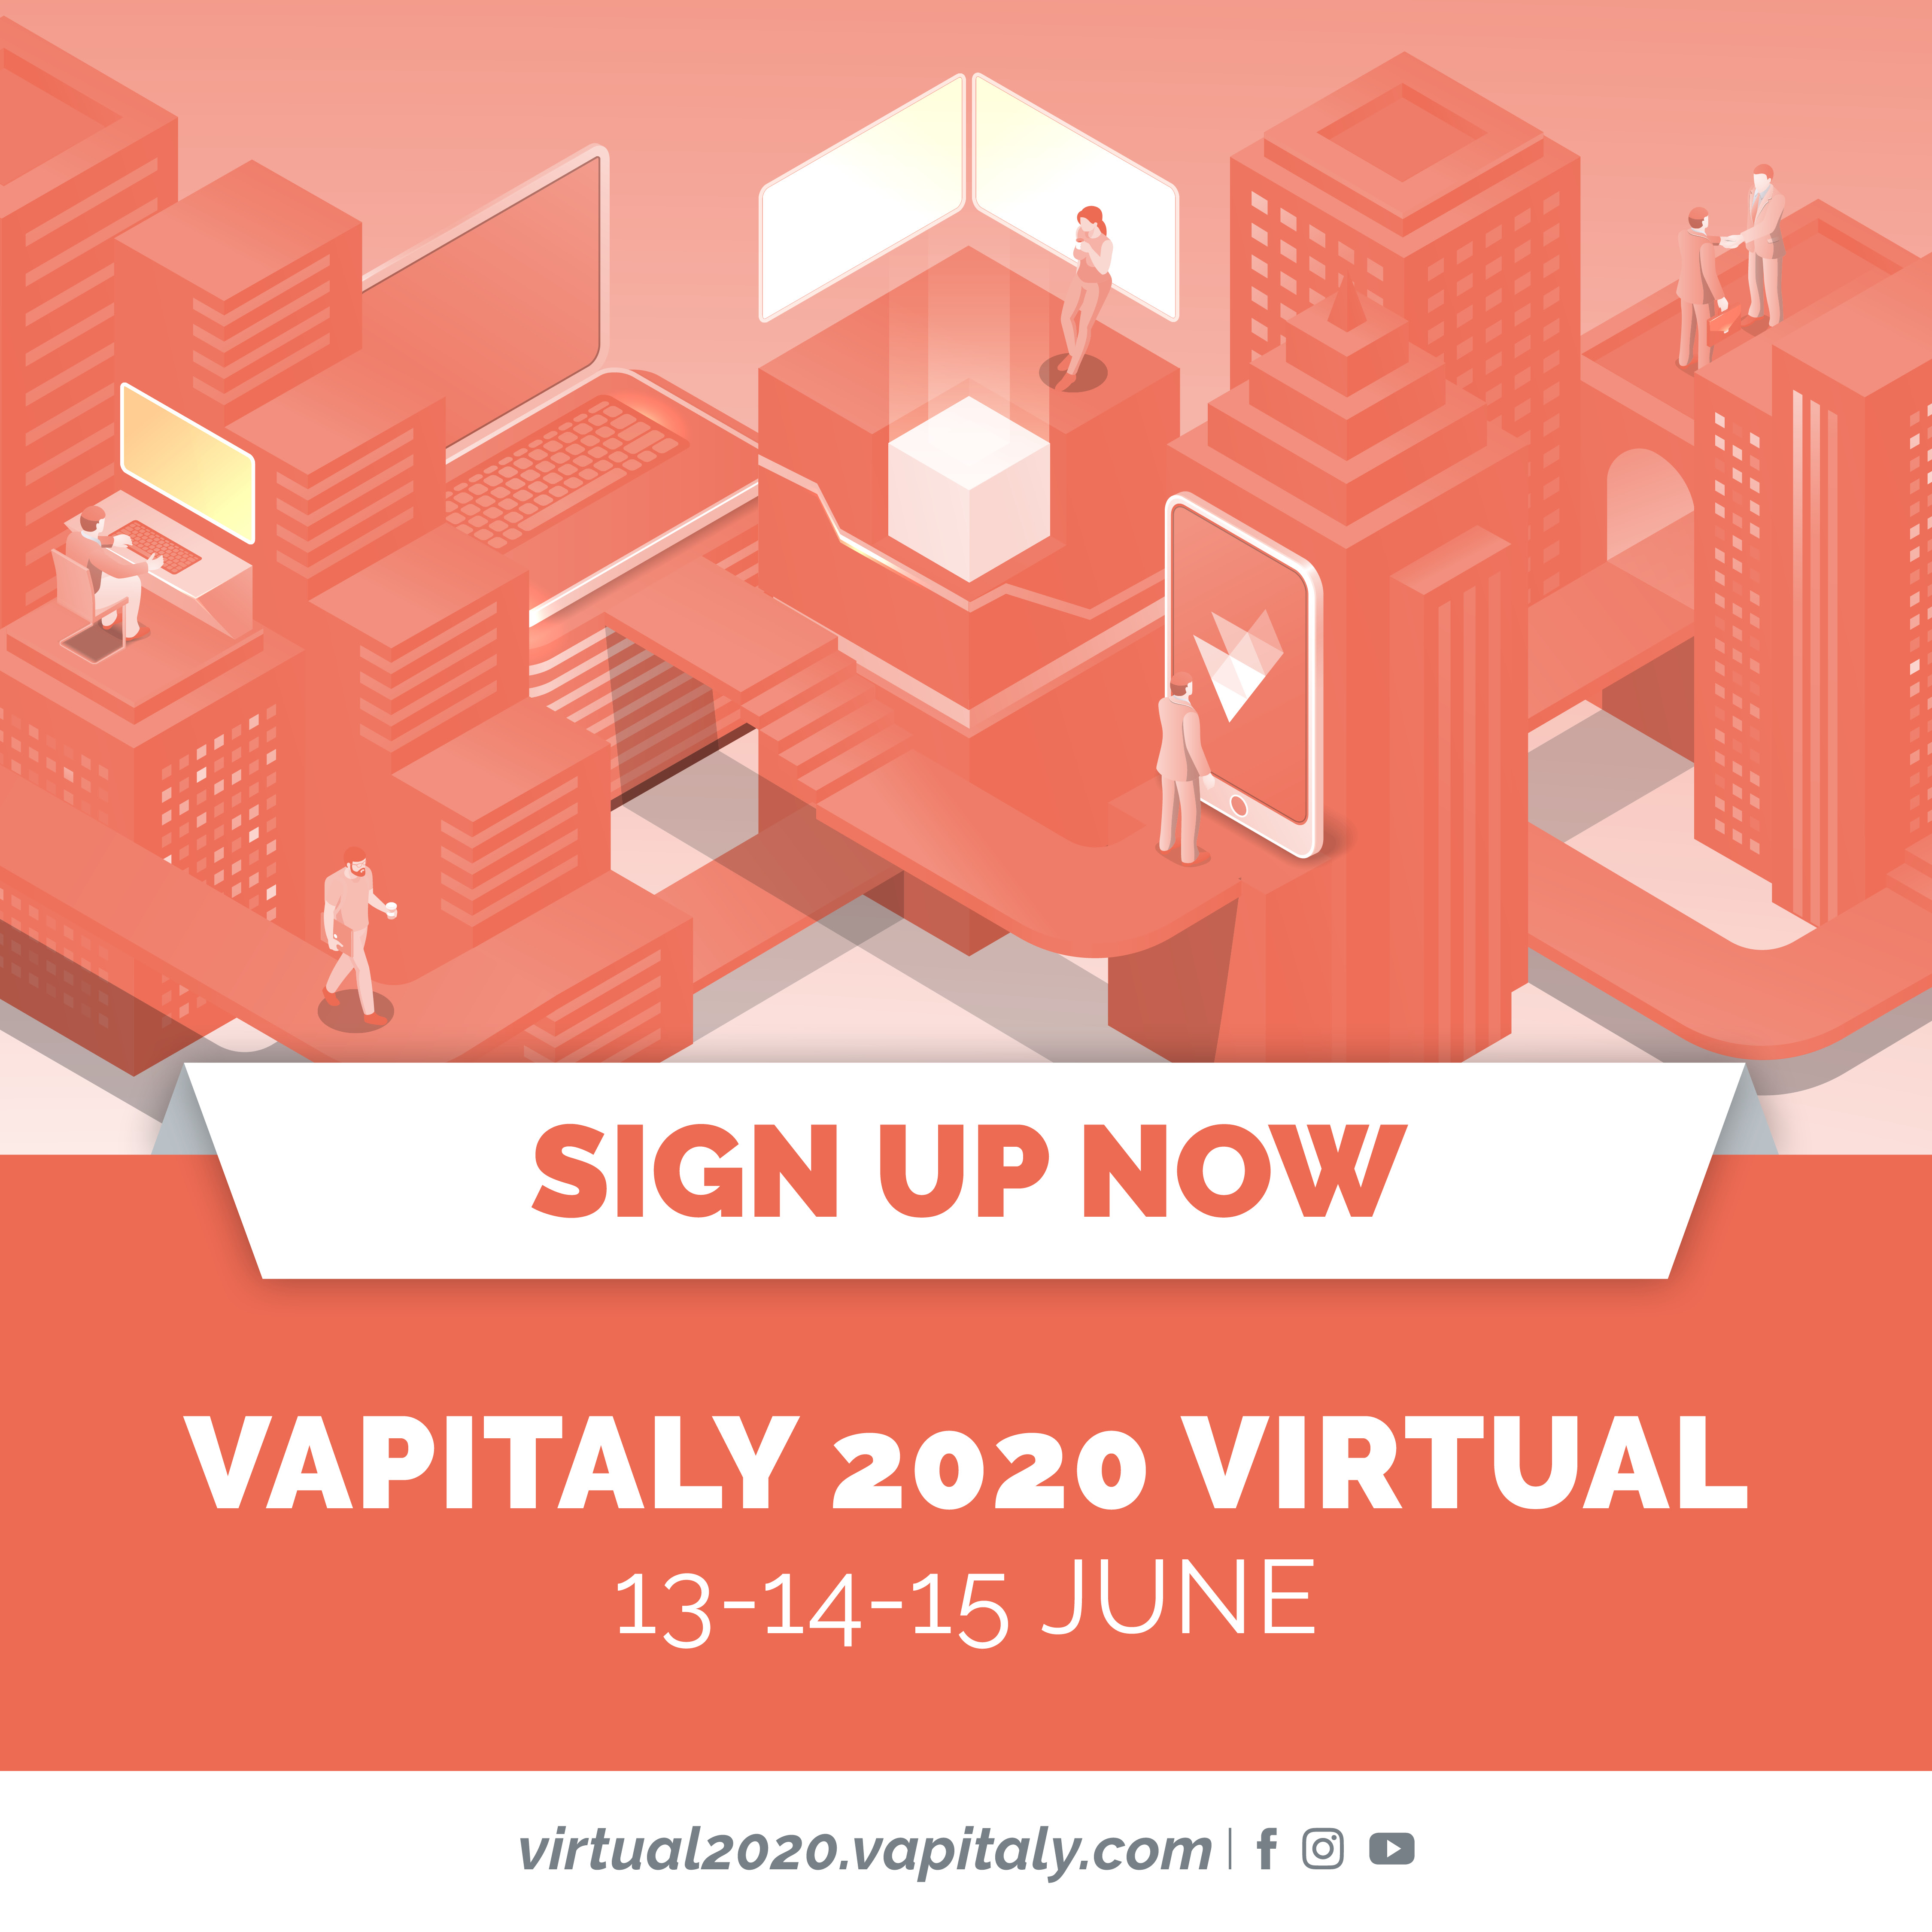 VAPITALY 2020 VIRTUAL Iscrizioni aperte, assicurati un posto da protagonista